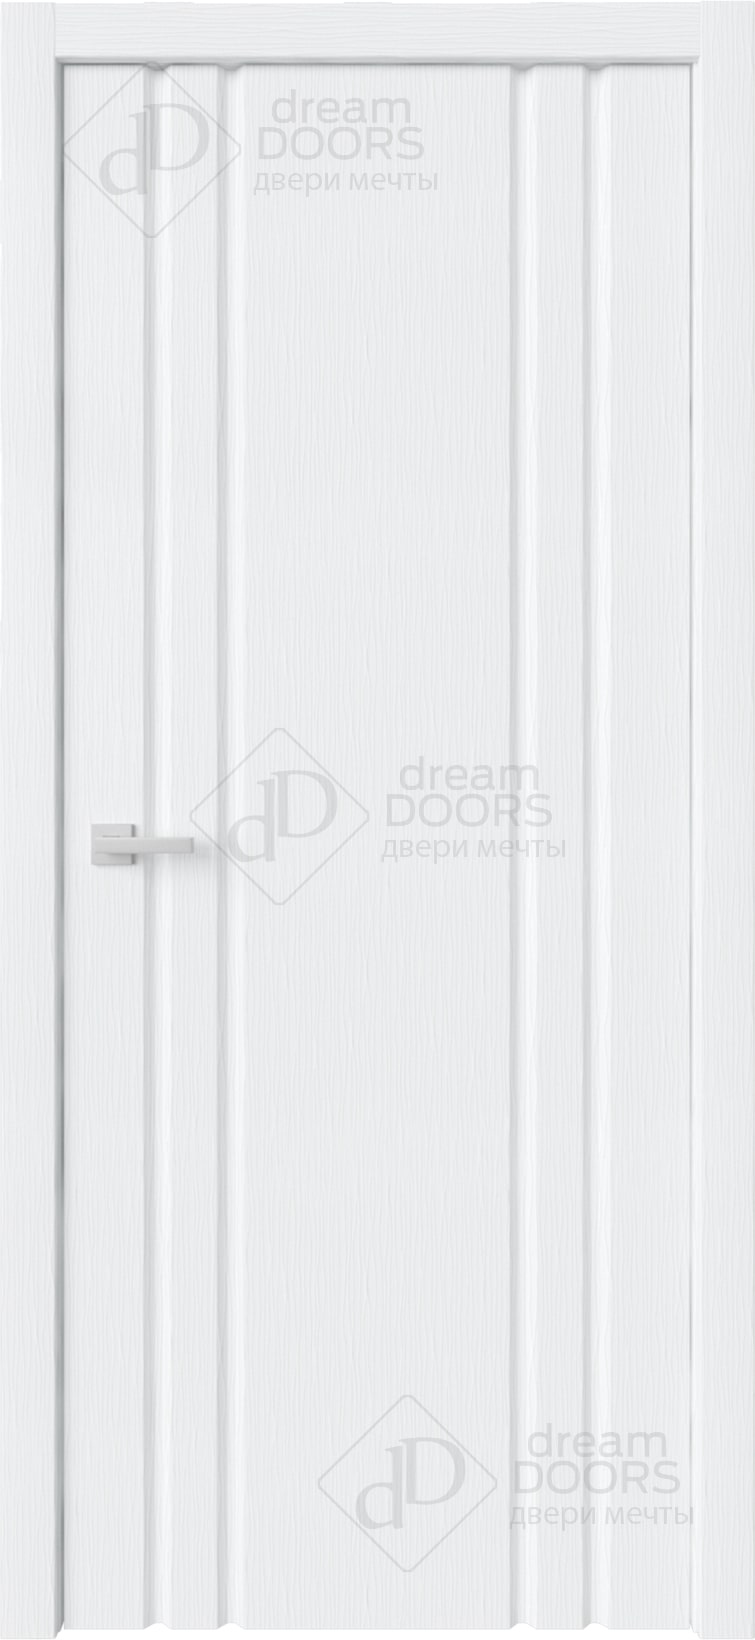 Dream Doors Межкомнатная дверь Стиль 2 узкое ПГ, арт. 20070 - фото №5